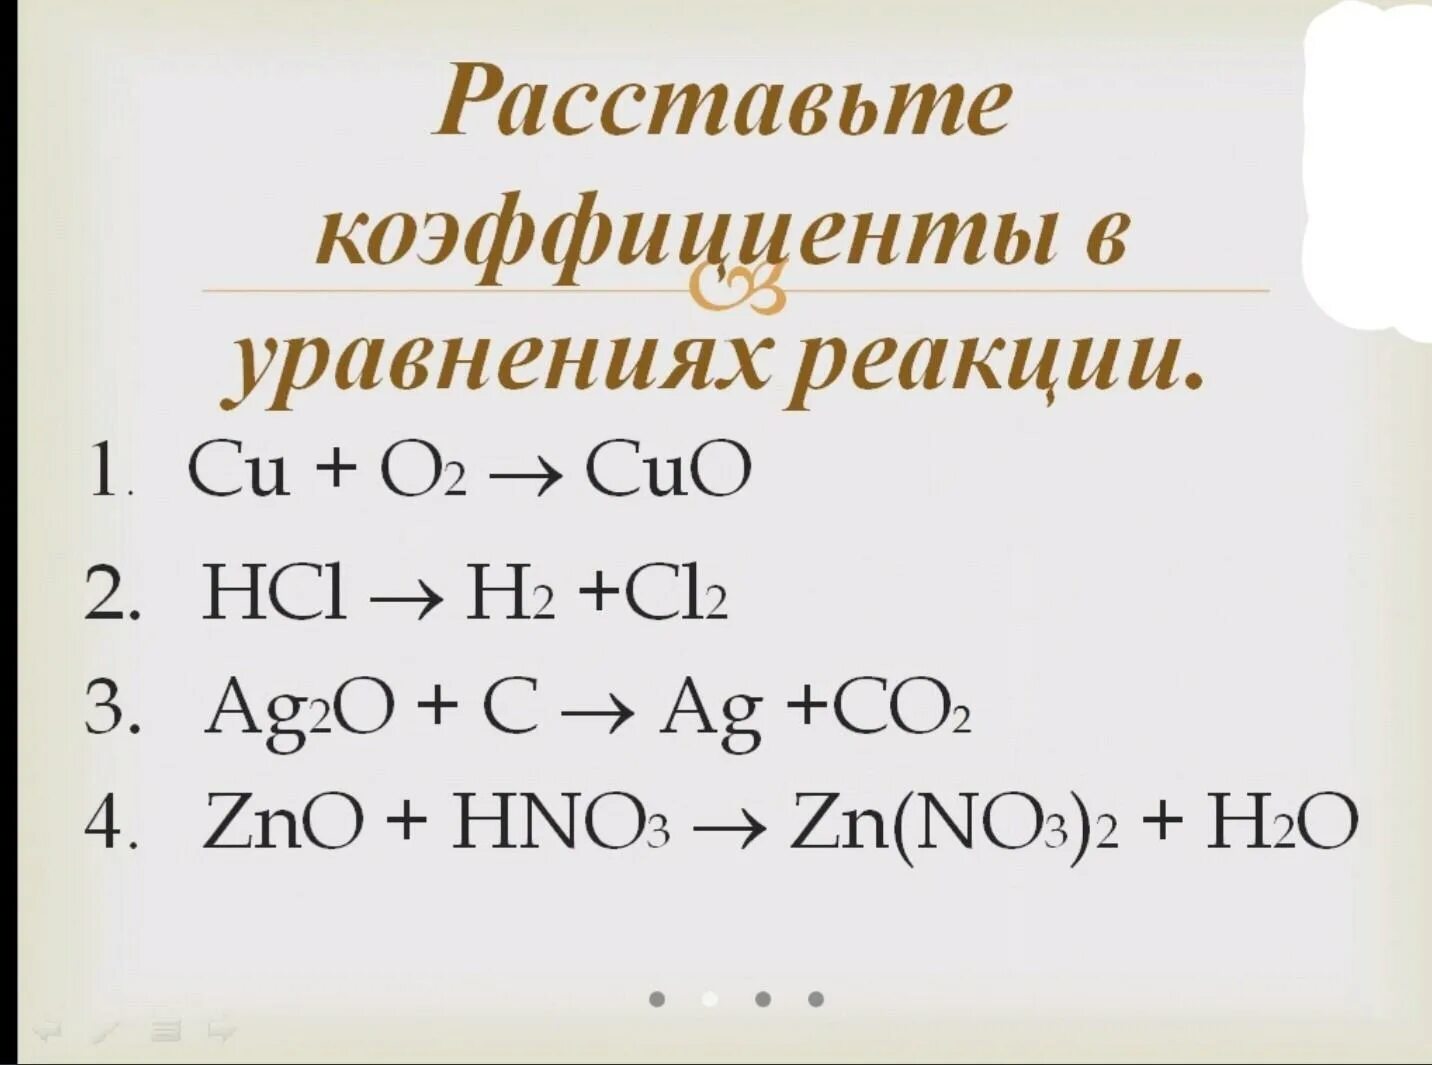 Zno c cl2. Задание на расстановку коэффициентов. Задачи на расстановку коэффициентов в химических уравнениях. Коэффициенты в уравнении реакции. Уравнения на коэффициенты по химии.